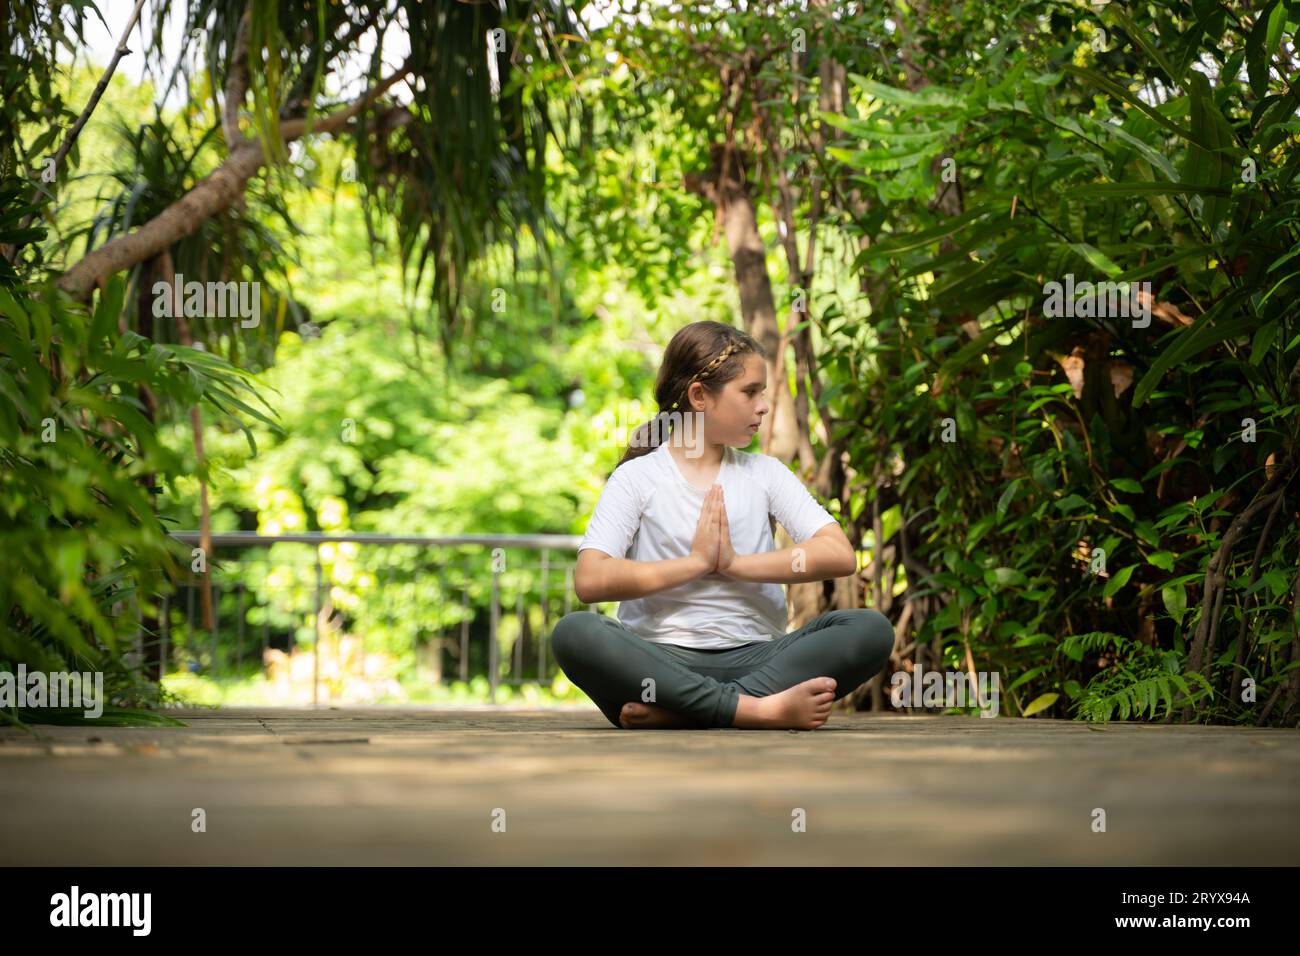 Petite fille dans le jardin il y a des allées en bois et un tunnel d'arbres verts frais, avec des activités de yoga pour la santé Banque D'Images